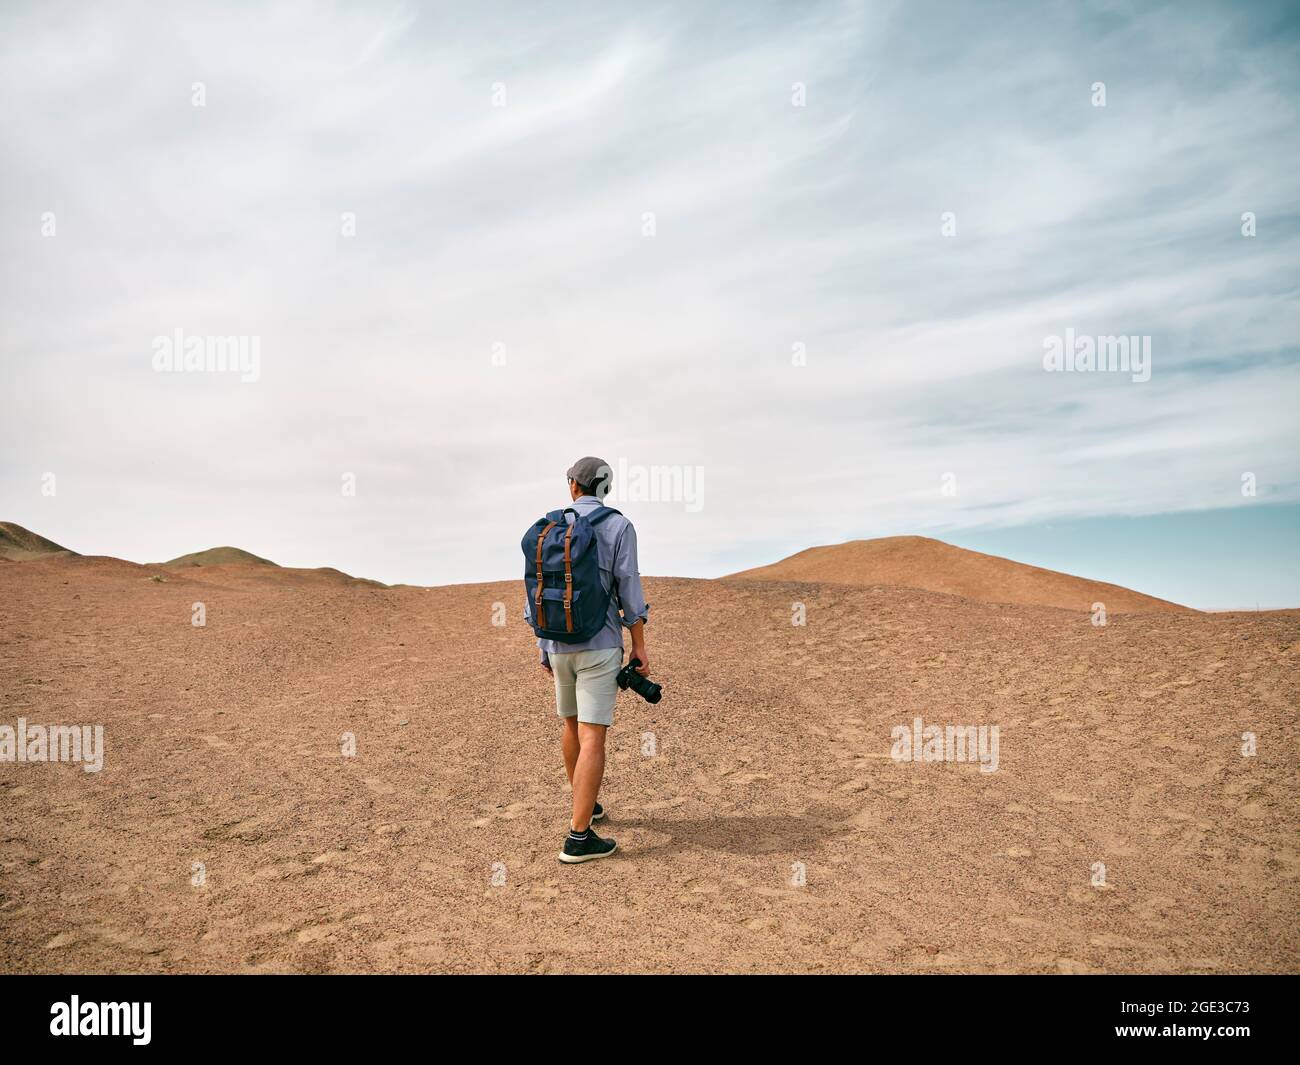 photographe paysagiste asiatique de randonnée sur une colline regardant la vue, vue arrière Banque D'Images